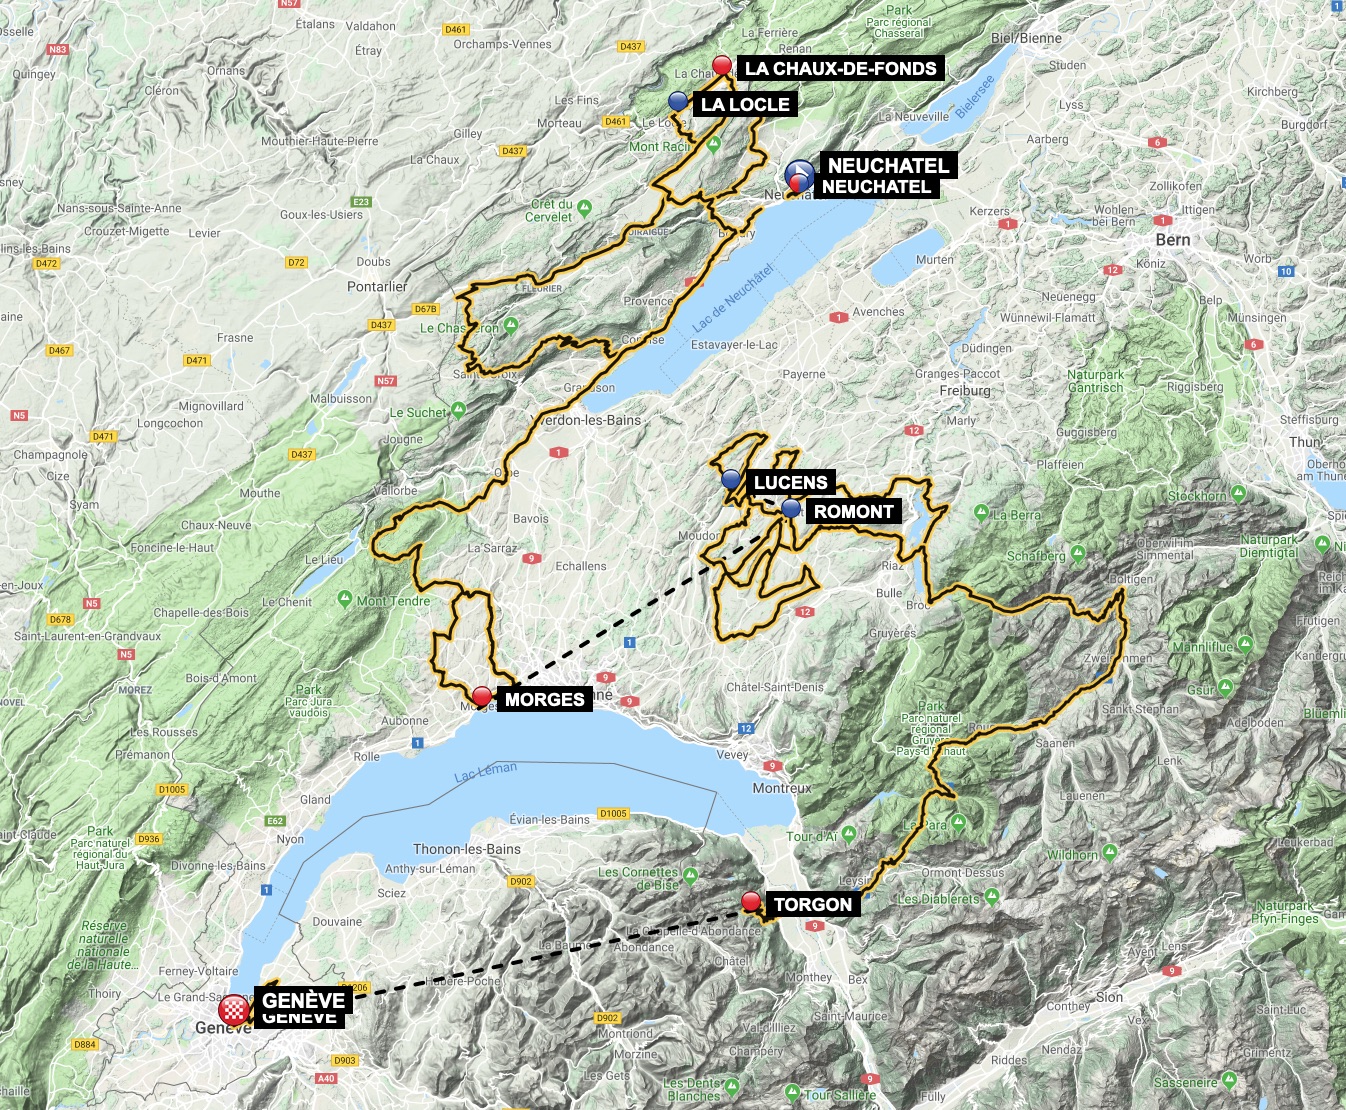 Tour de Romandie 2019 Tour-de-romandie-2019-map-113e2f1052